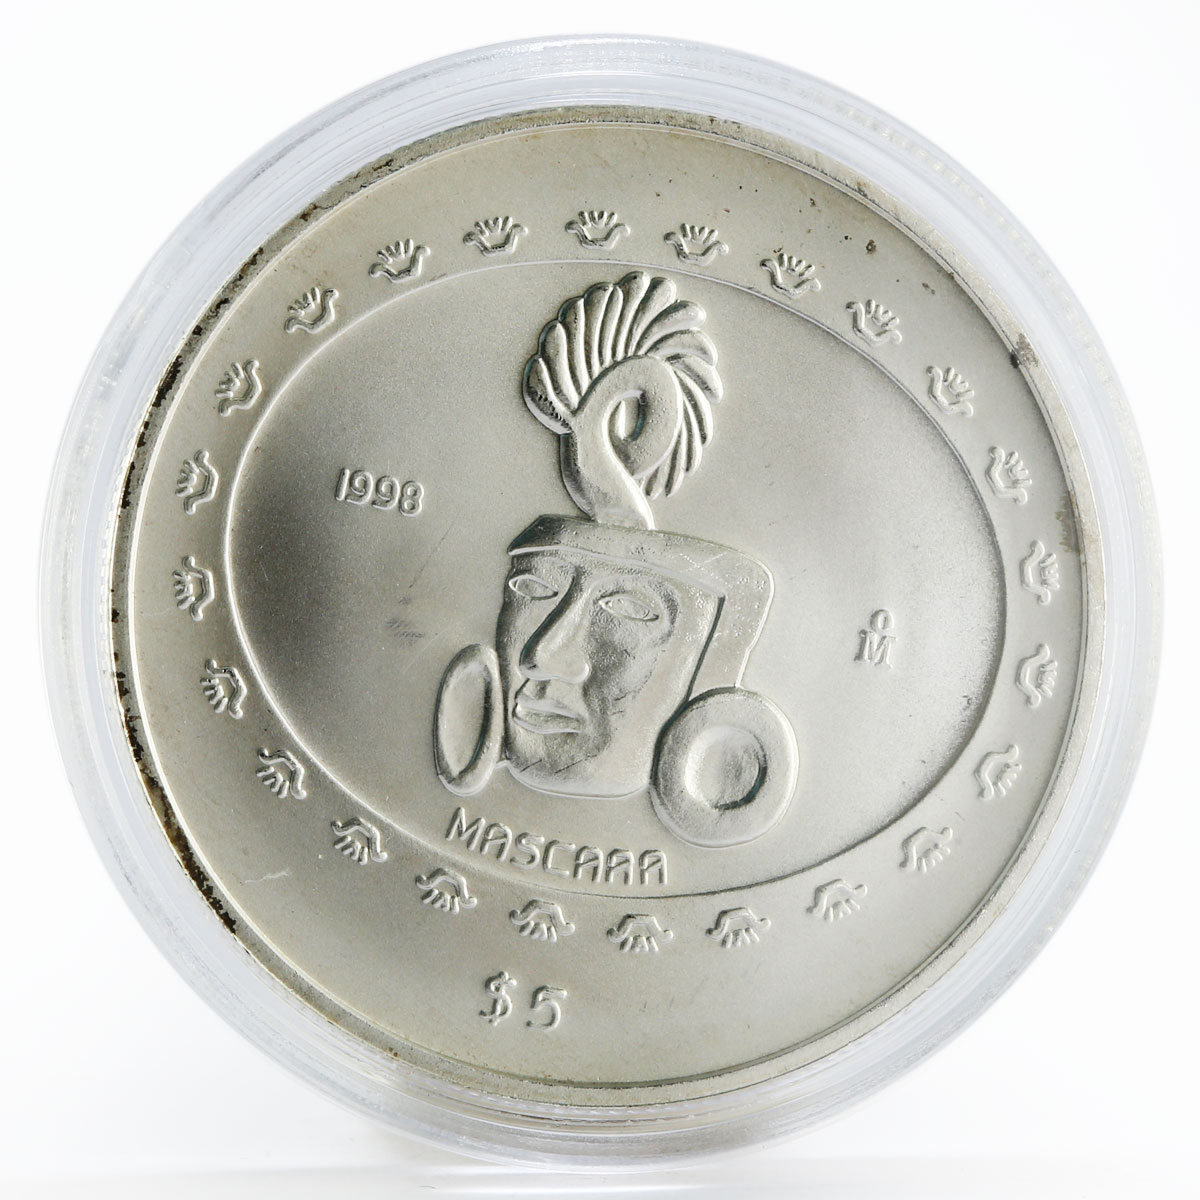 Mexico 5 pesos Teotihuacan - Mascara Sculpture silver coin 1998